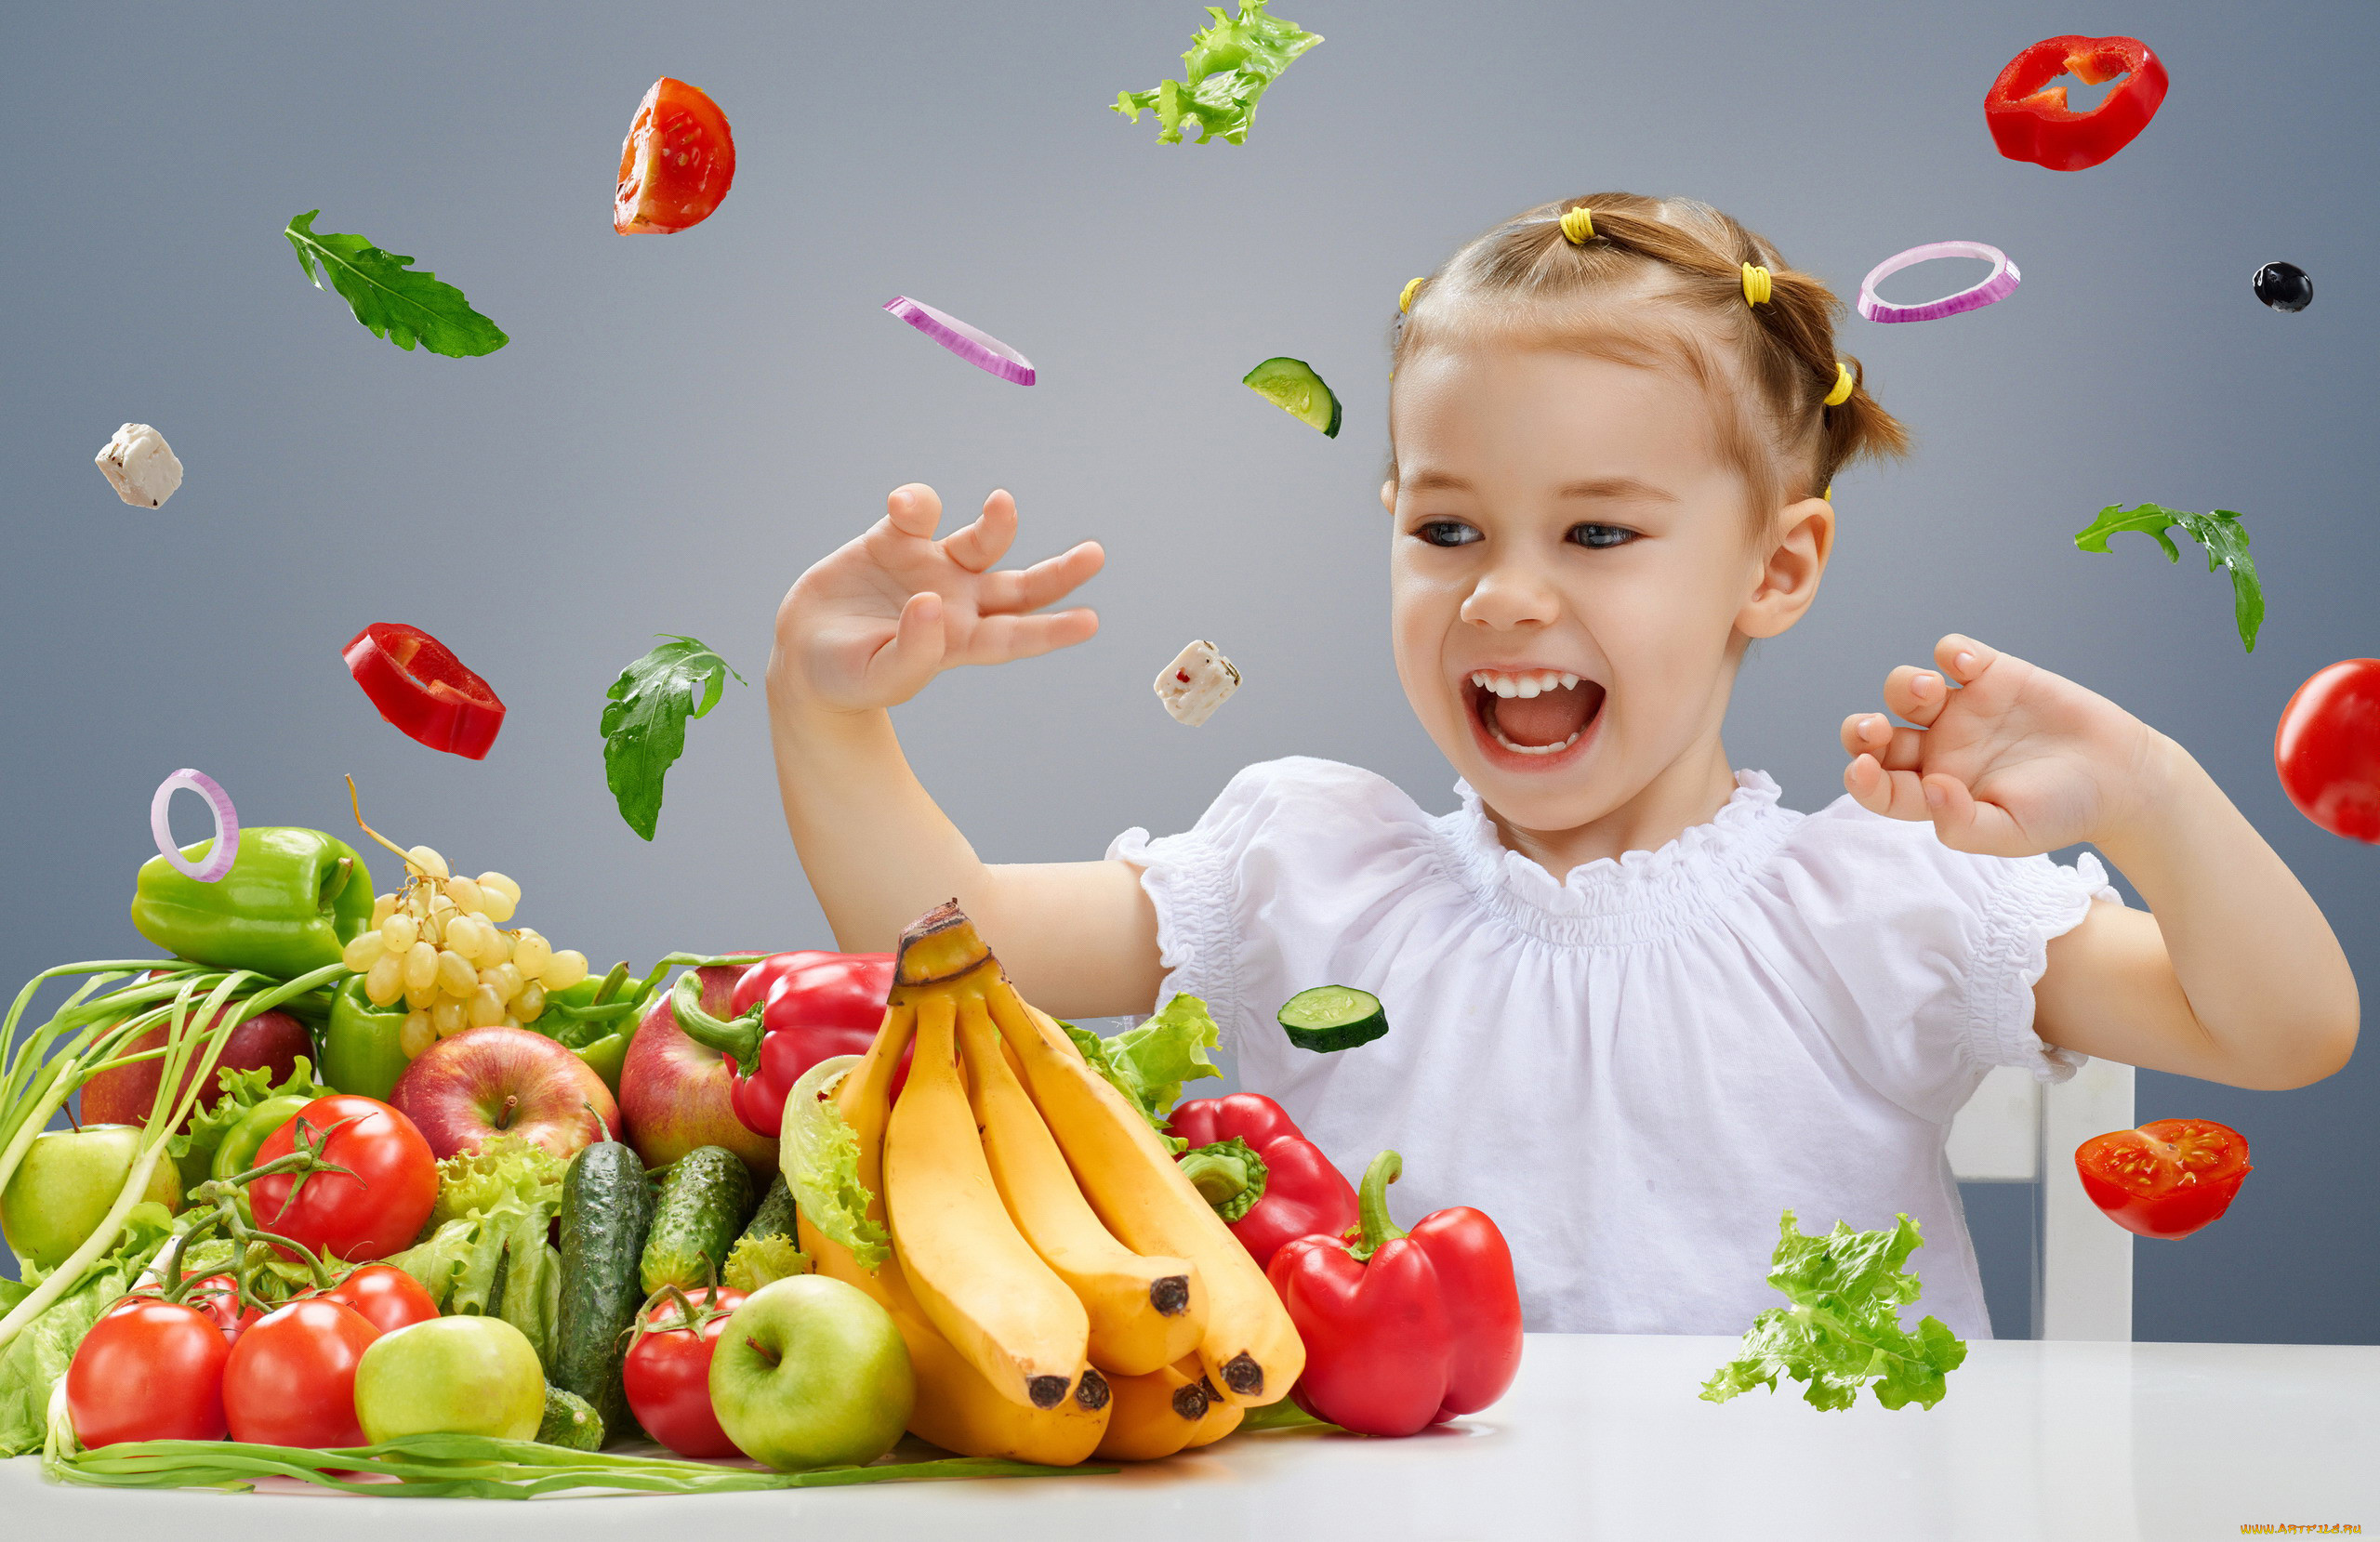 Овощи и фрукты для детей. Вкусная и здоровая пища для детей. Здоровое питание Здоровые дети. Овощи и фрукты в питании детей. Кидать фрукты